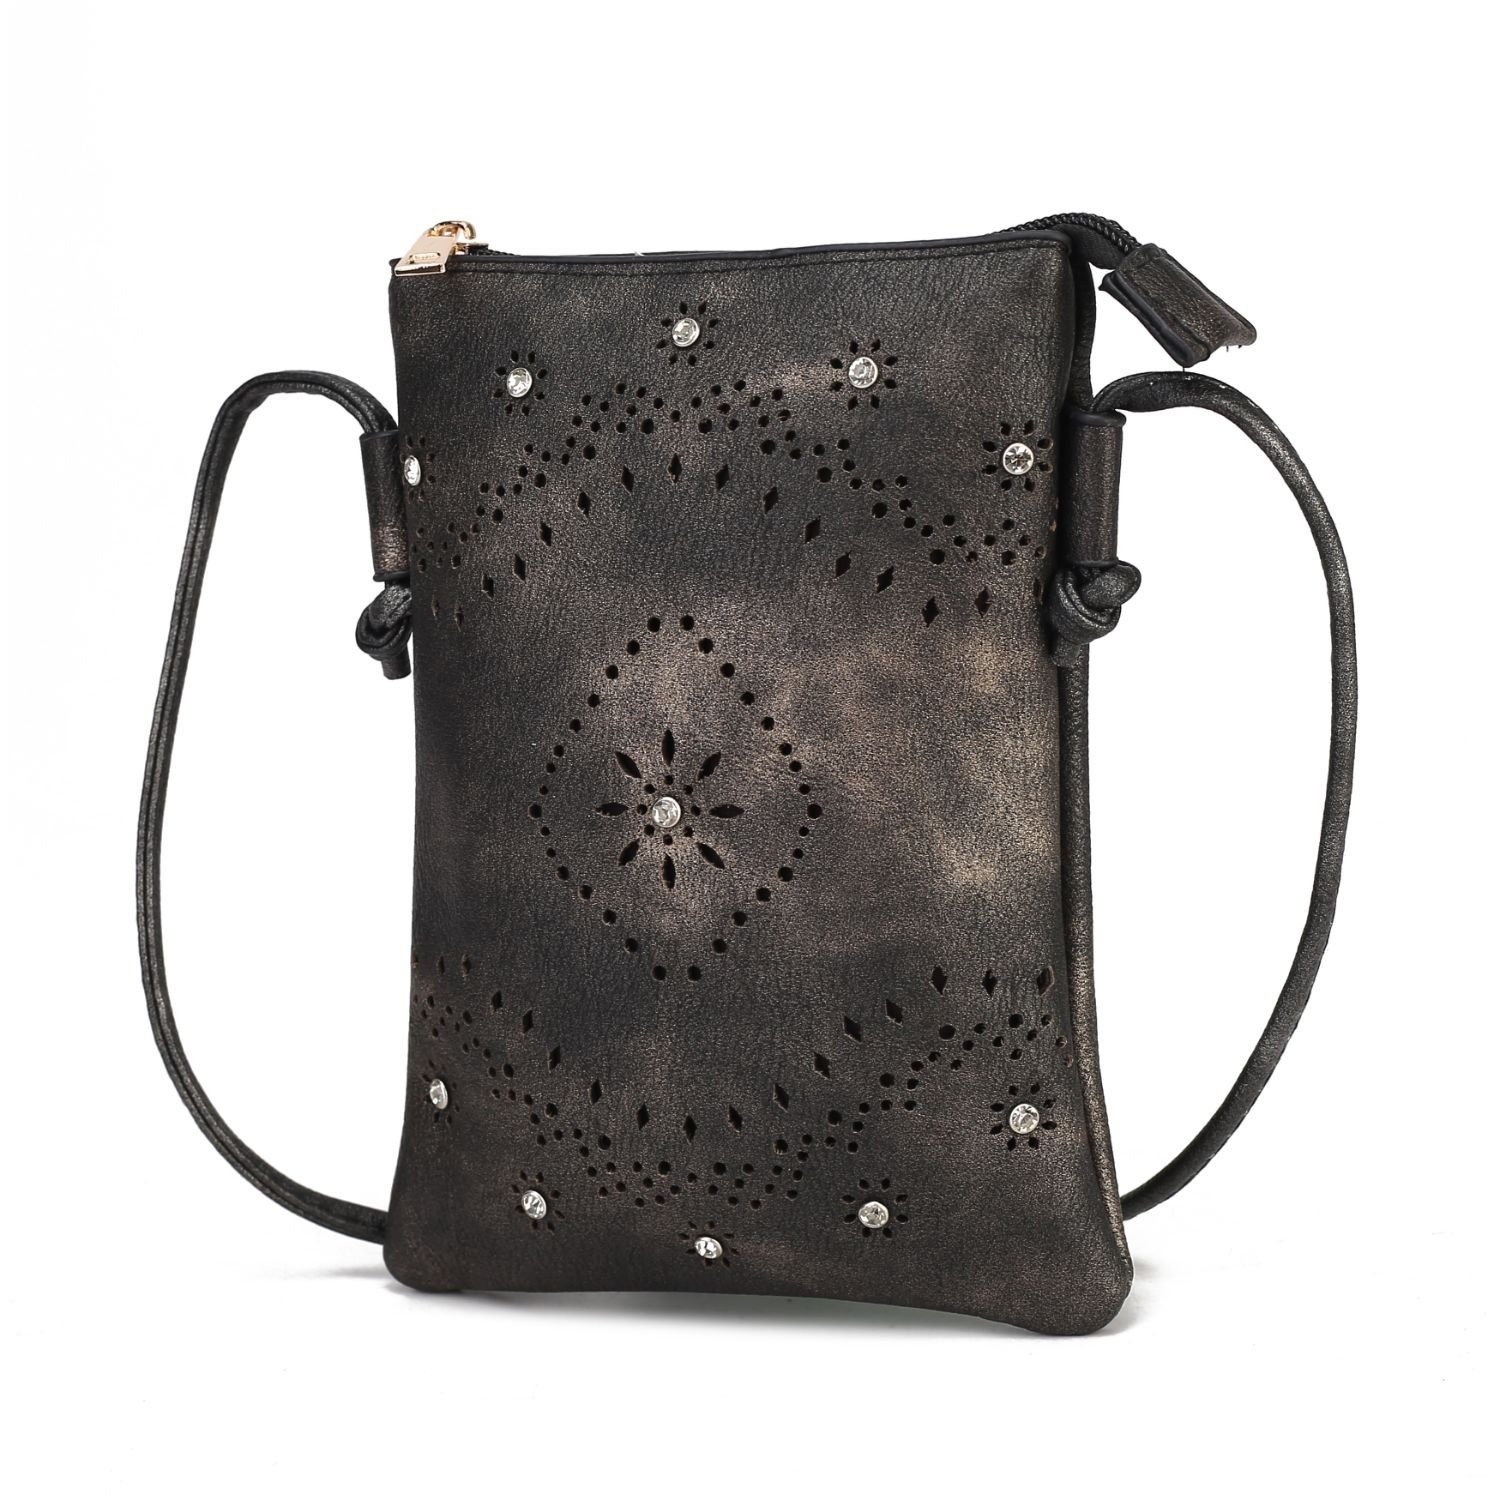 MKF Collection Arlett Crossbody Handbag By Mia K. - Navy